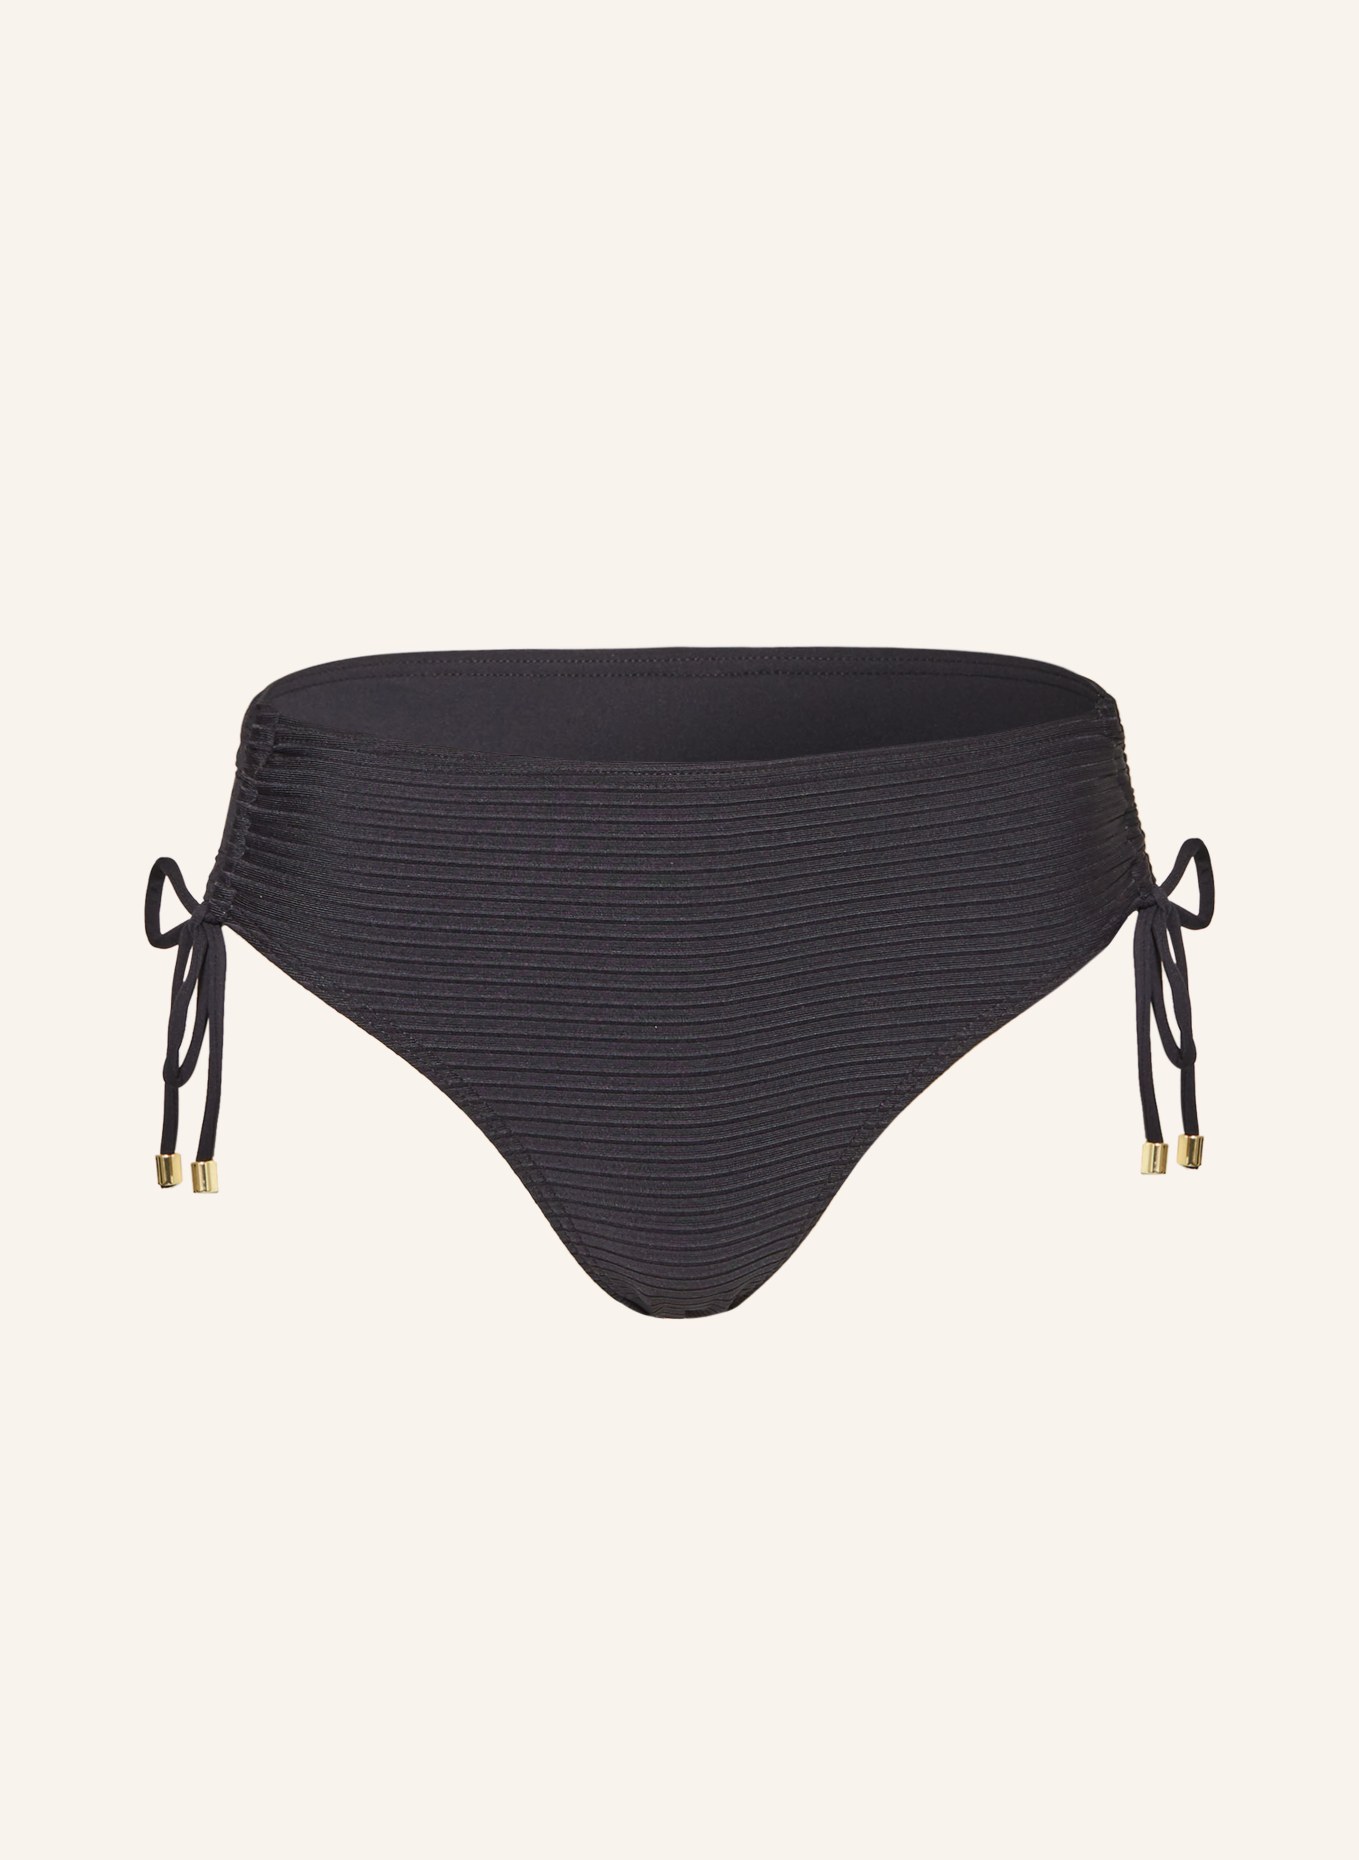 CYELL Basic bikini bottoms CAVIAR, Color: BLACK (Image 1)